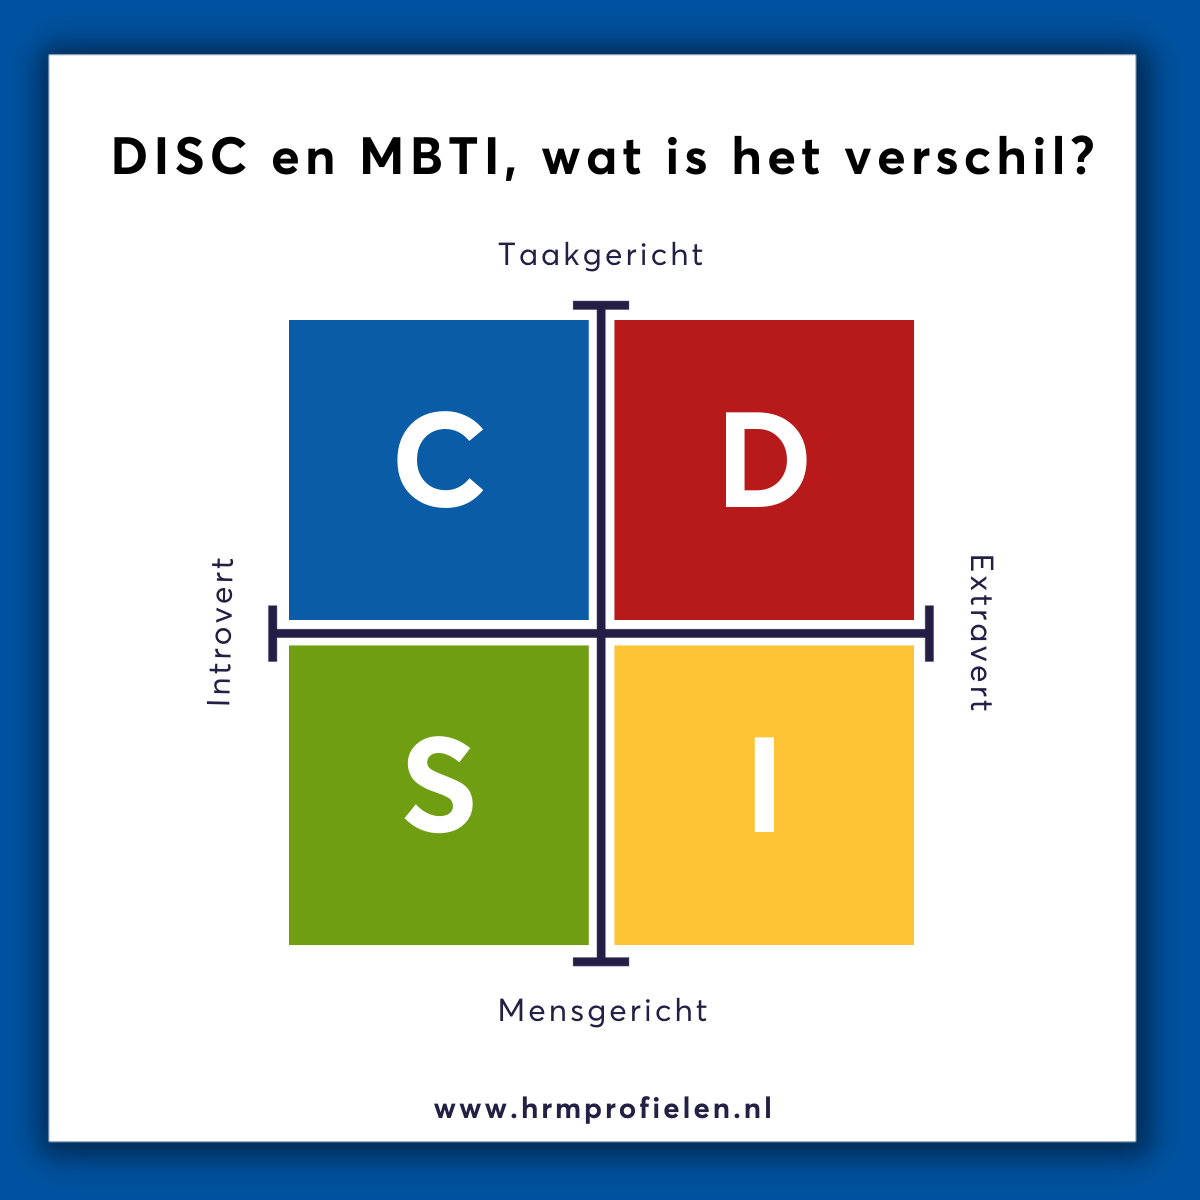 DISC en MBTI wat is het verschil